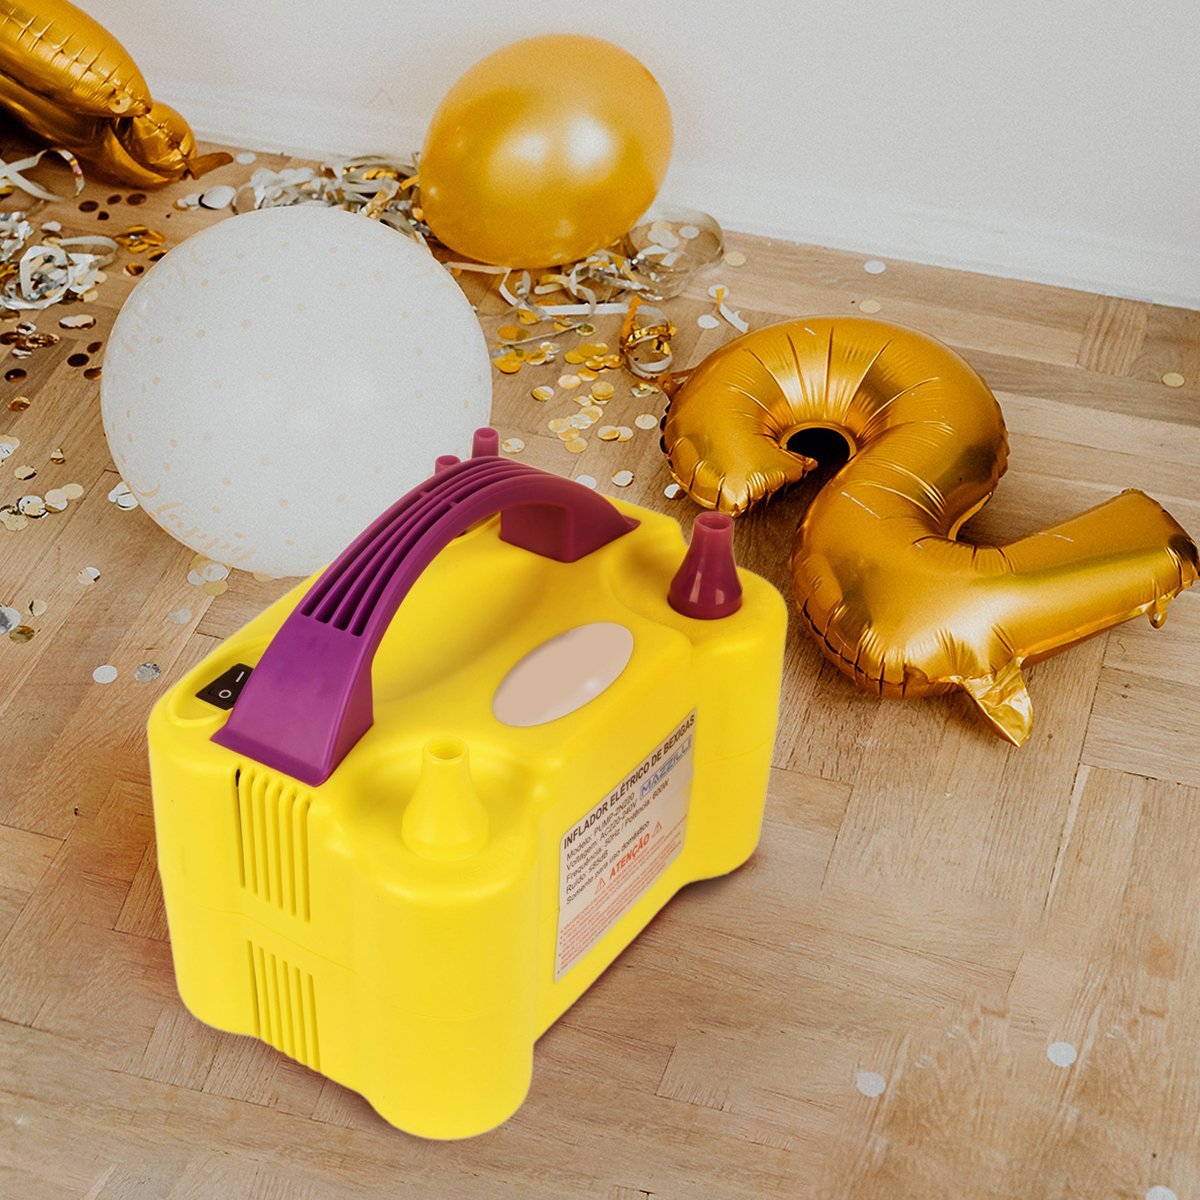 Inflador Compressor Balão Bexiga 2 Bico Festa Aniversário:Amarelo110v - 2